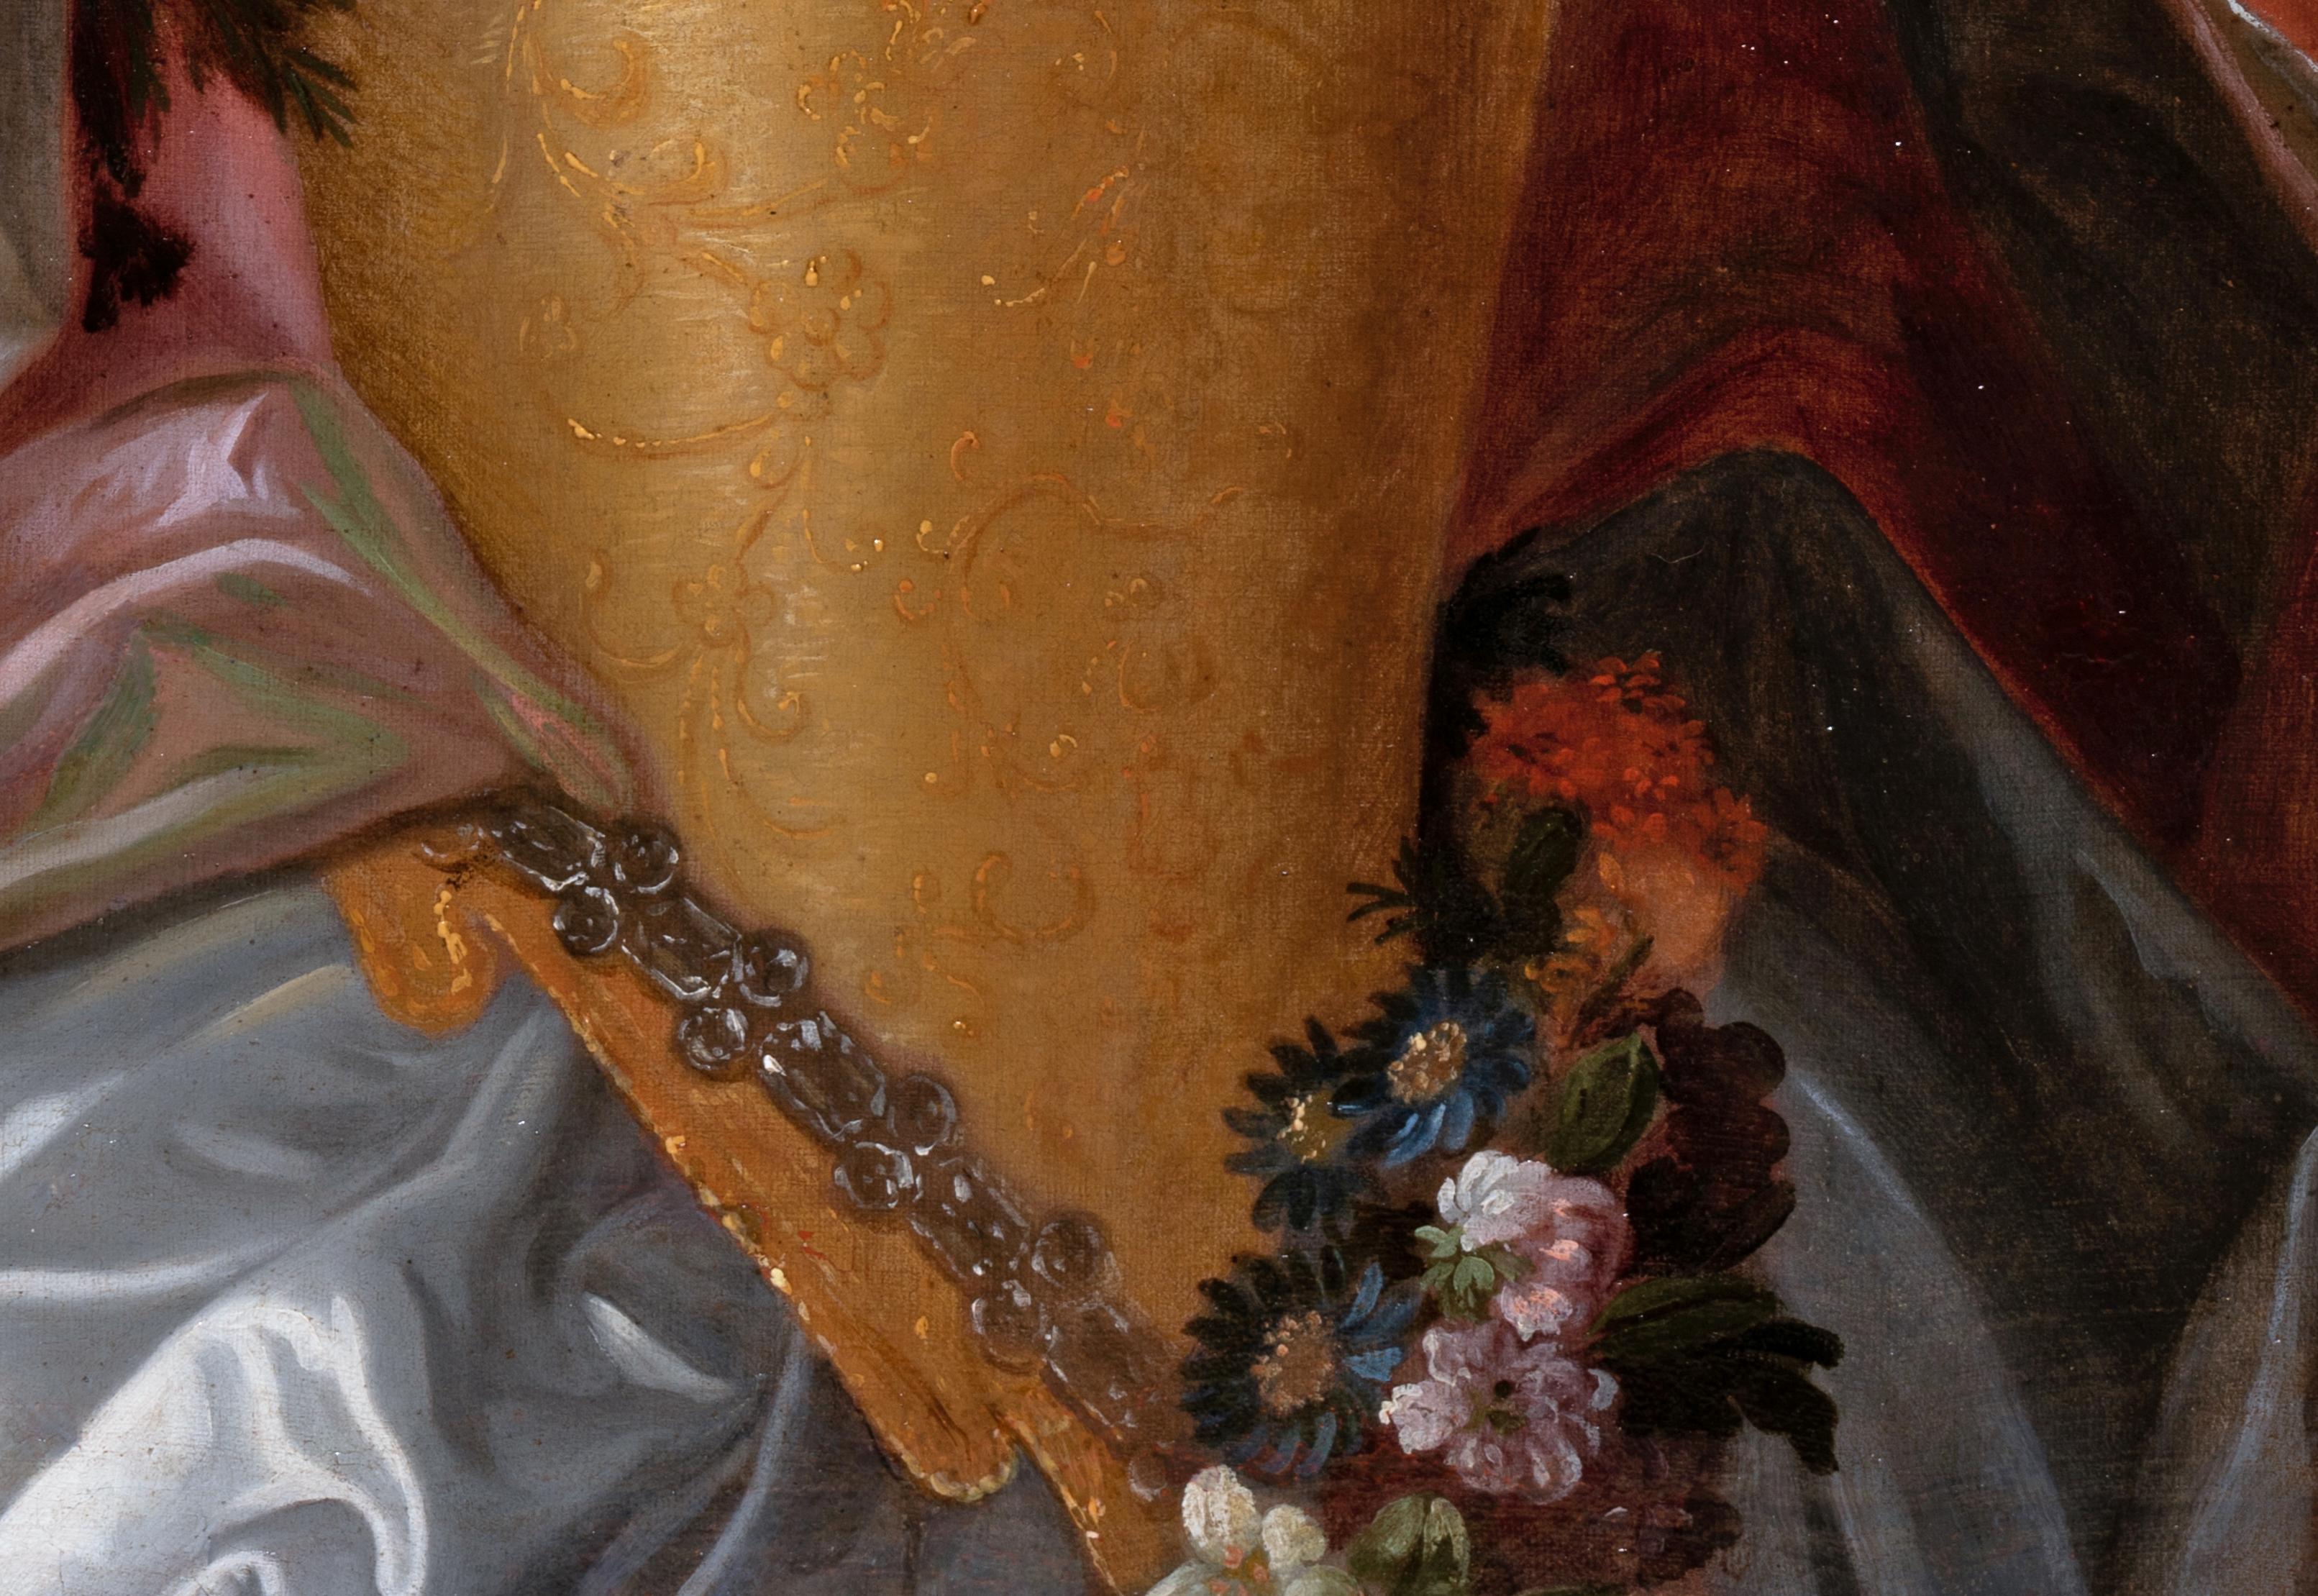 École française de la fin du XVIIe siècle,
Atelier de Nicolas de Largillière (Paris, 1656-1746)
Circa 1690
Cette ravissante jeune femme est représentée à mi-hauteur, déguisée en Flore, déesse des fleurs, elle porte la tenue printanière et regarde le